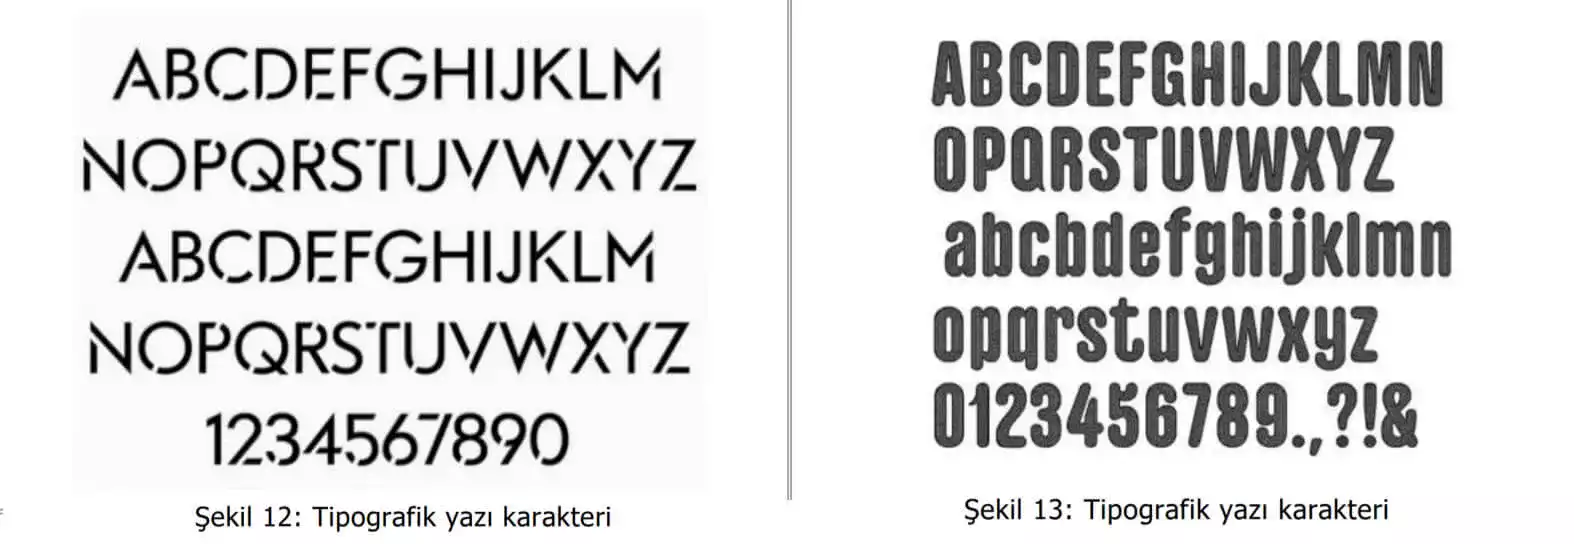 tipografik yazı karakter örnekleri-Üsküdar Patent